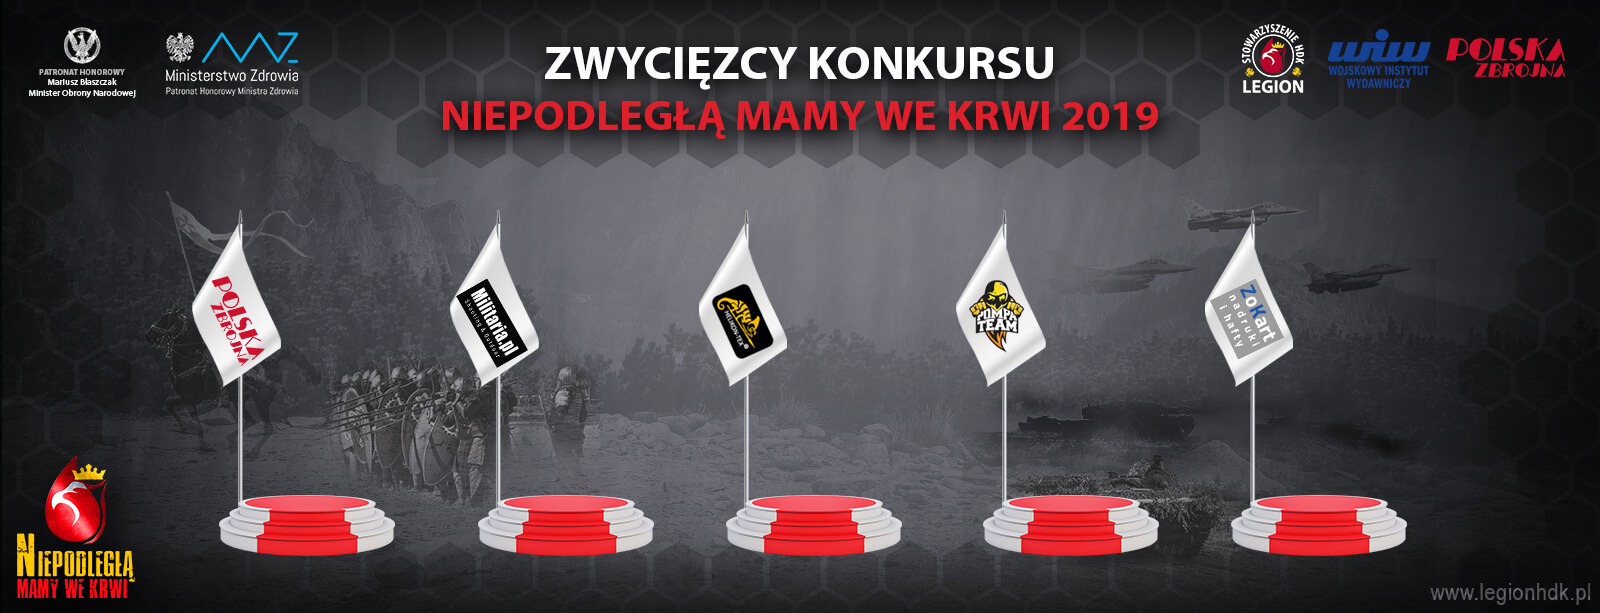 zwyciezcy konkursu kampanii niepodlegla mamy we krwi polska zbrojna krwiodawstwo legionhdk